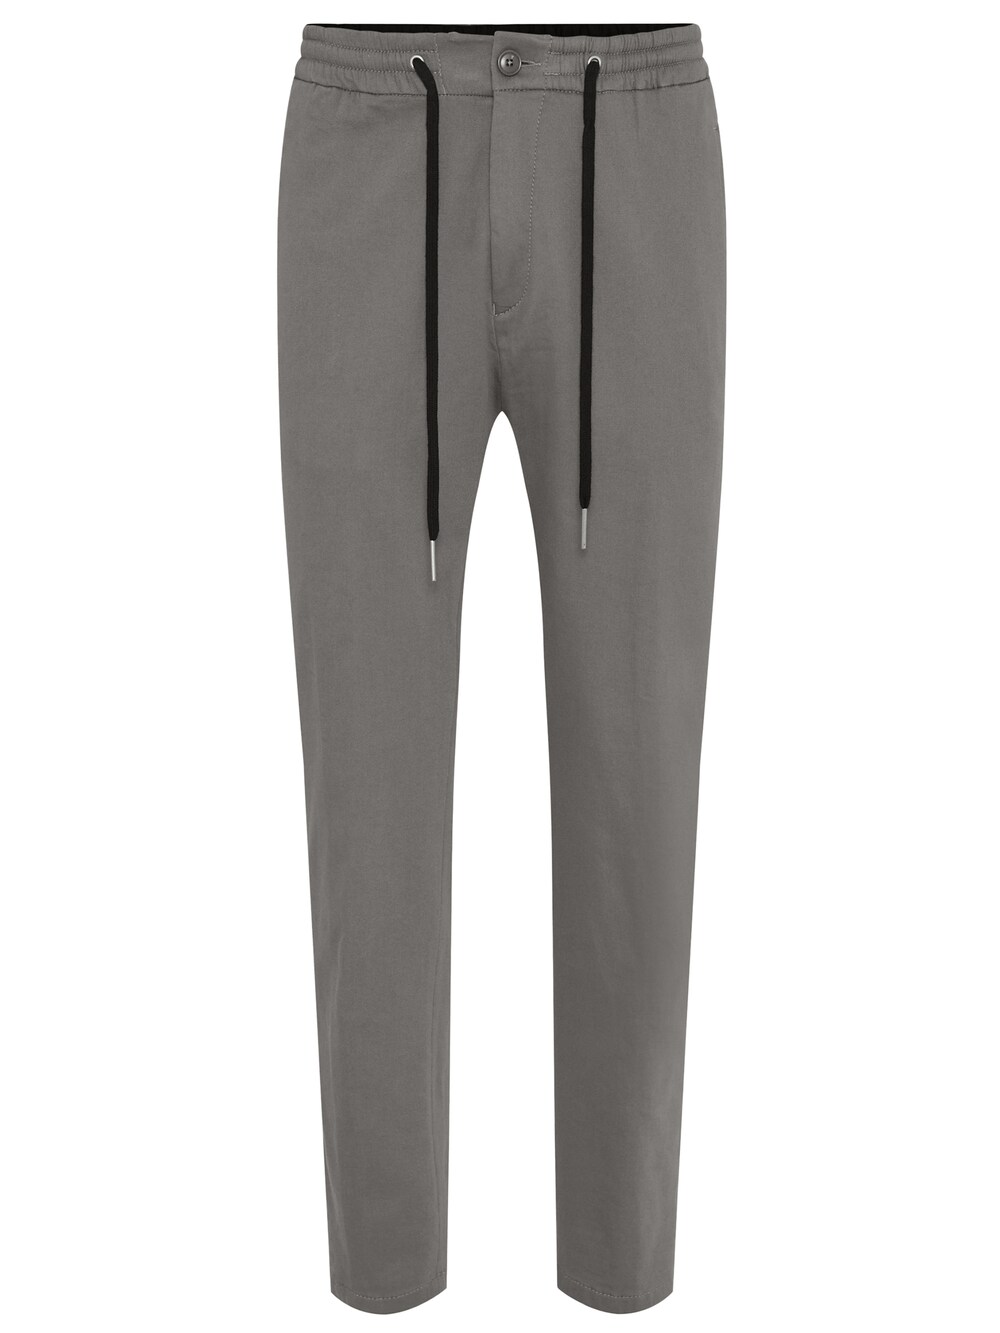 Обычные брюки Drykorn Jeger, серый